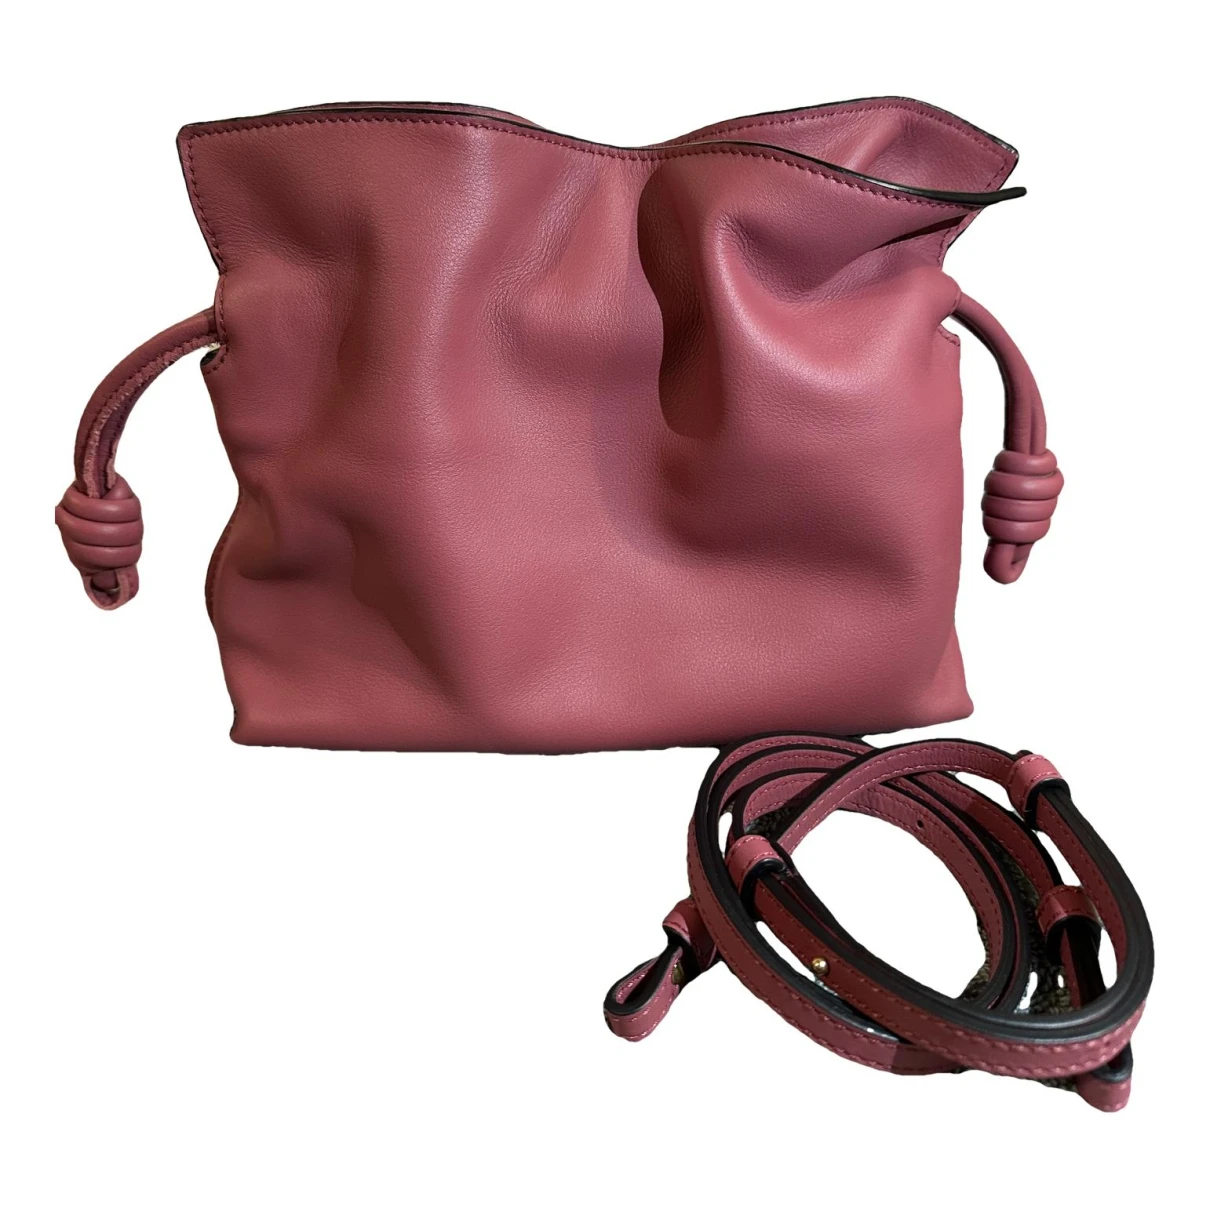 Pre-owned Loewe Flamenco Leather Crossbody Bag In Pink